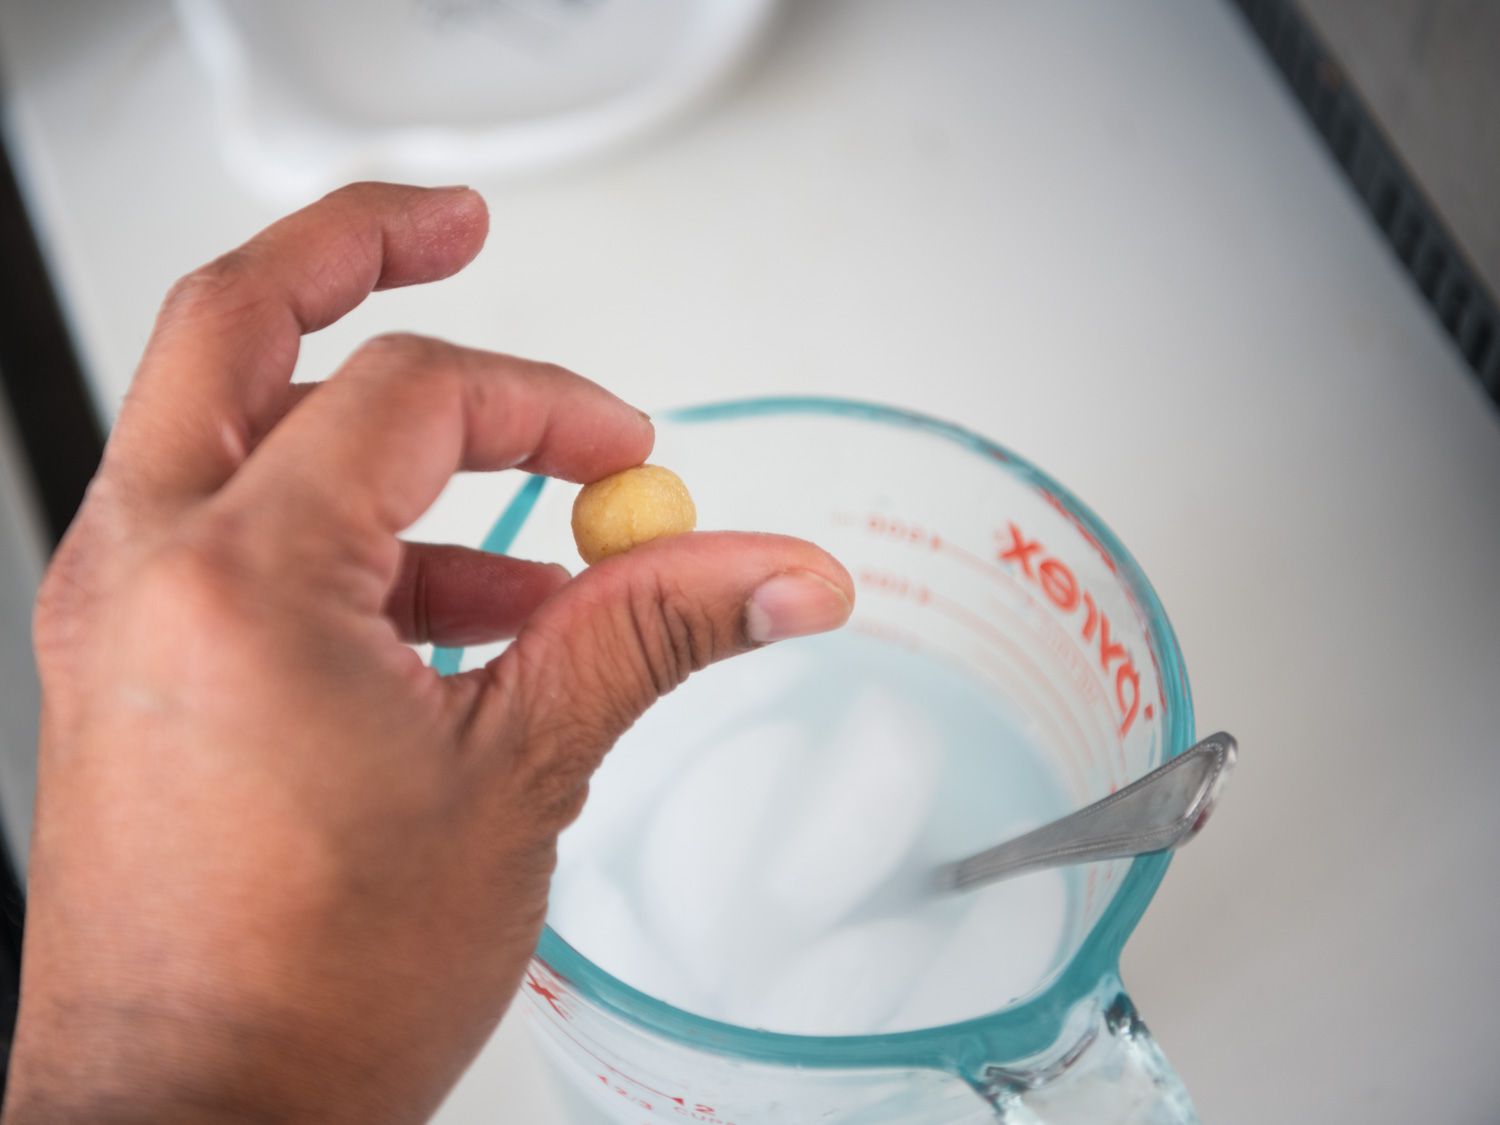 小块奶油面团在食指和拇指之间捏成一个球，经过冰浴试验gydF4y2Ba